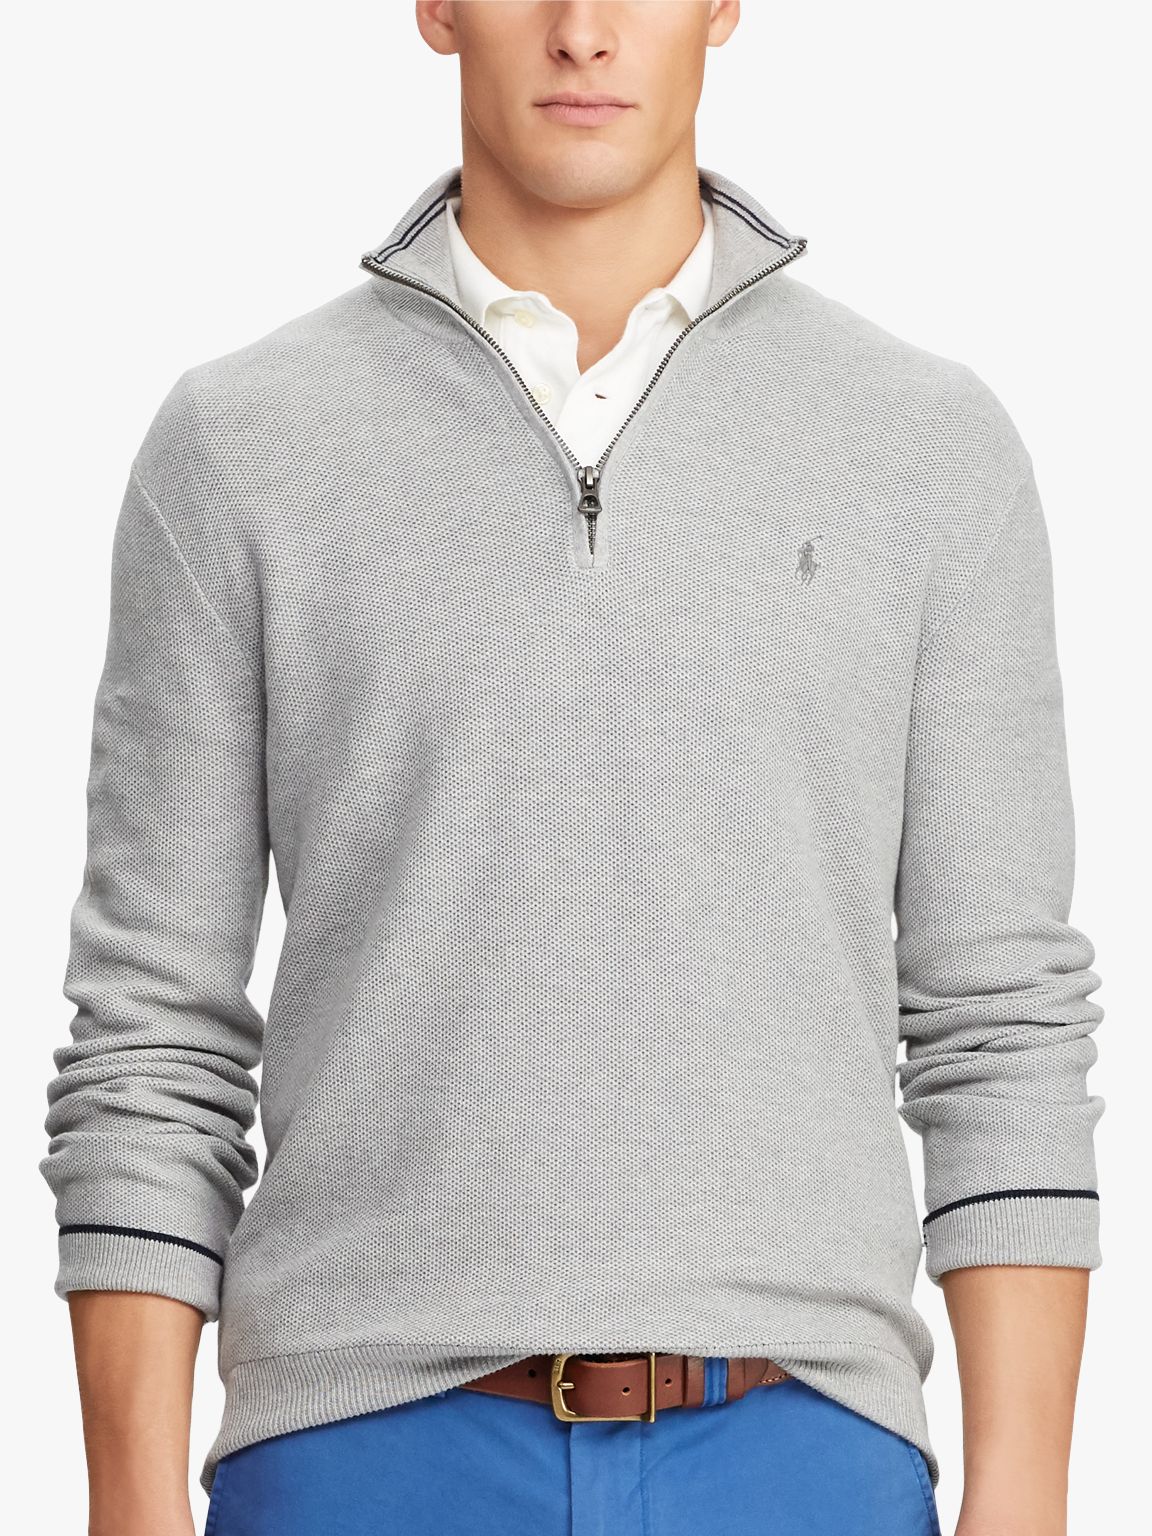 Polo Ralph Lauren Pima Cotton Half Zip Sweatshirt, Andover Heather, M